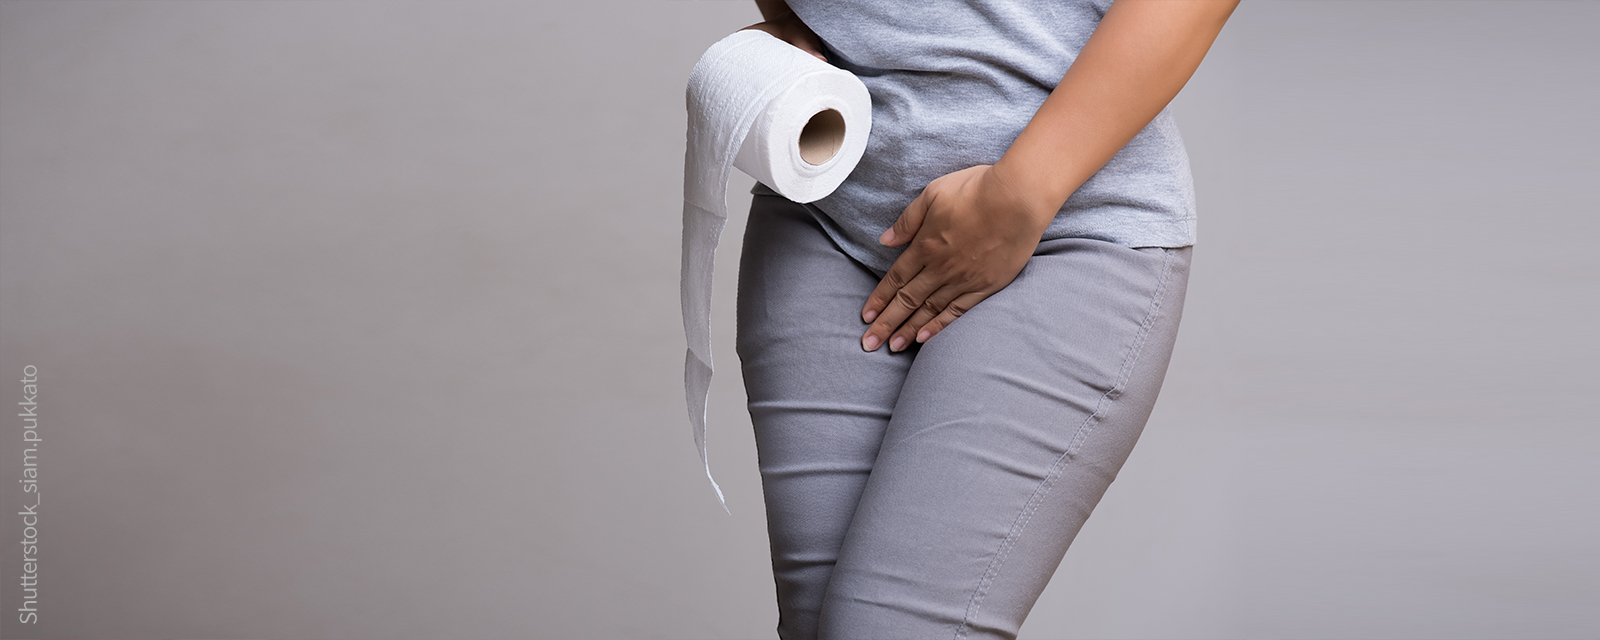 Frau mit Toilettenpapier in der Hand verschränkt die Beine und greift zum Intinbereich